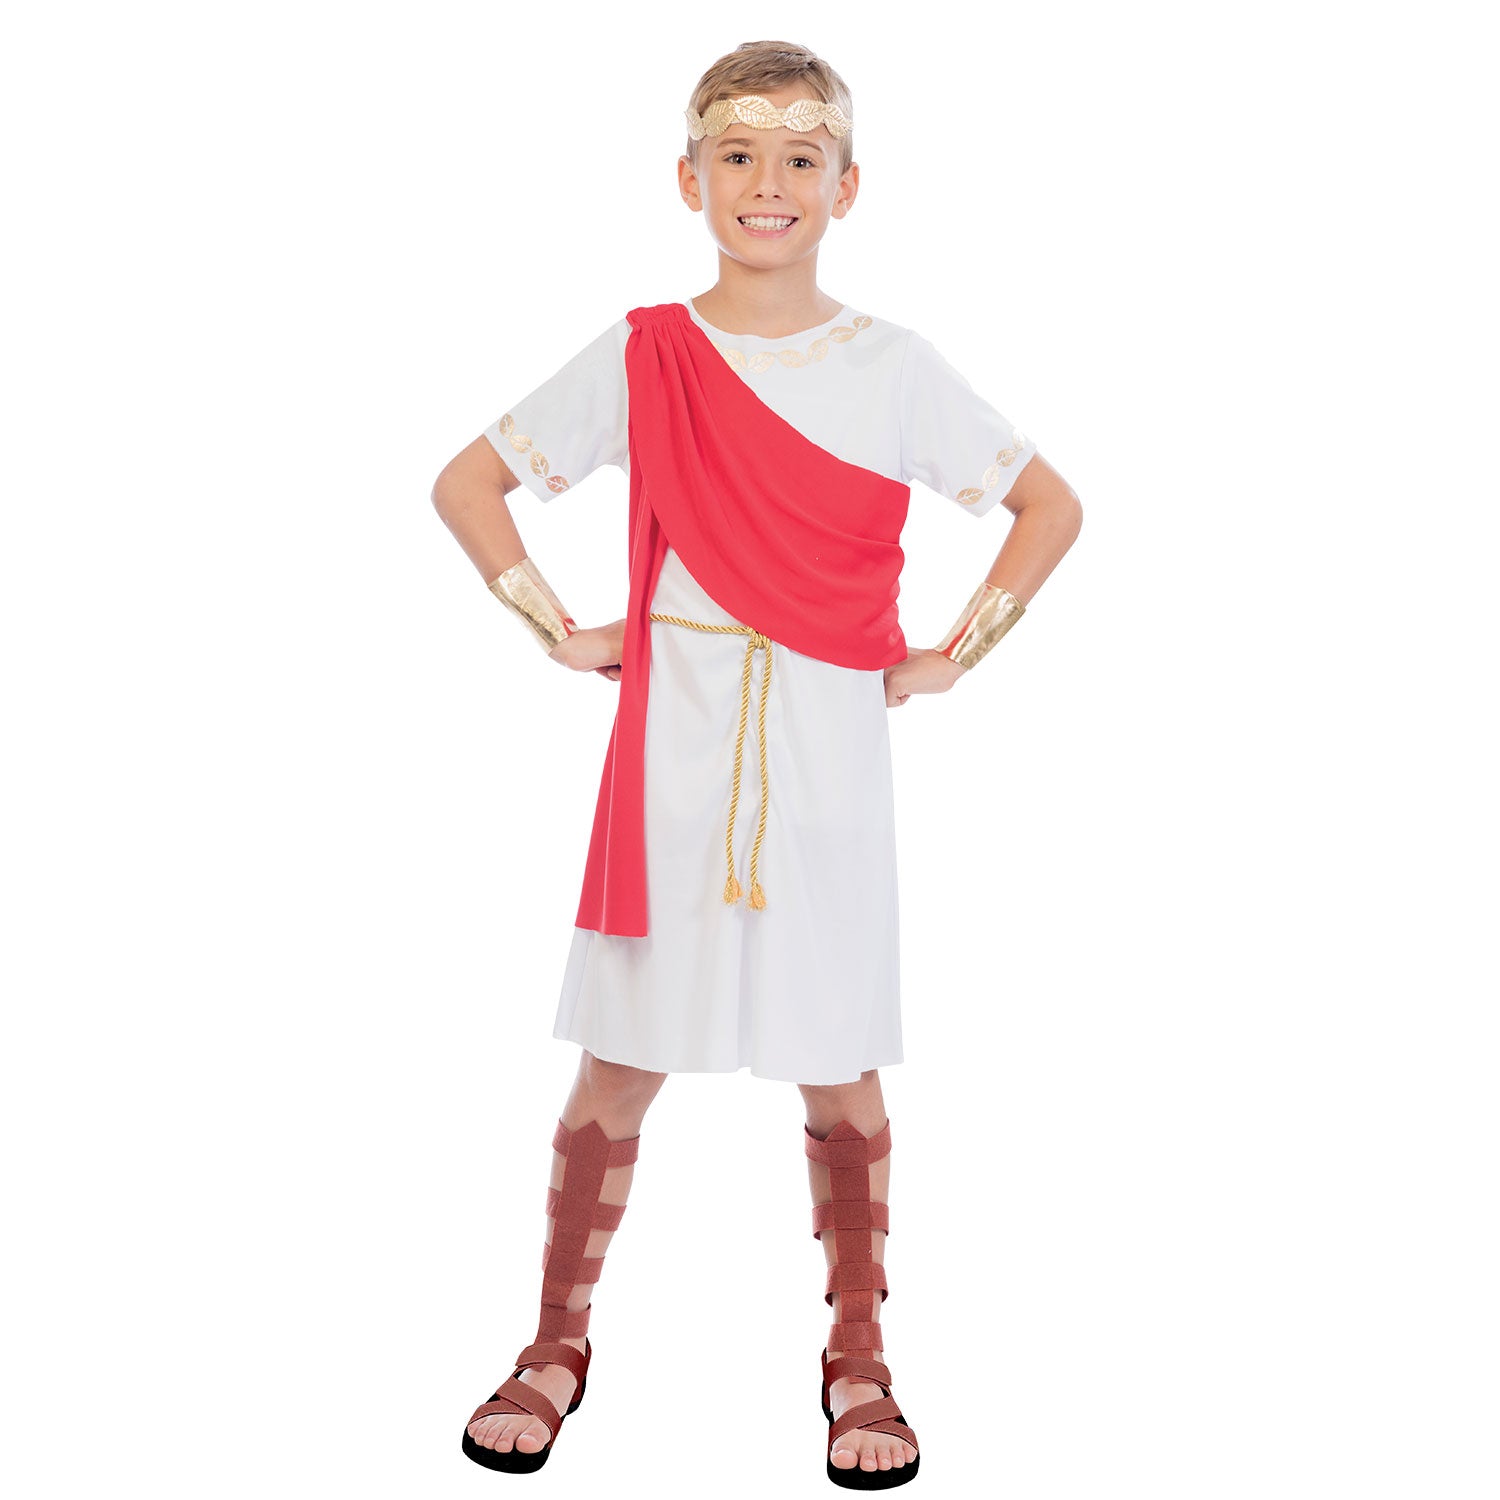 Child Toga Boy Costume